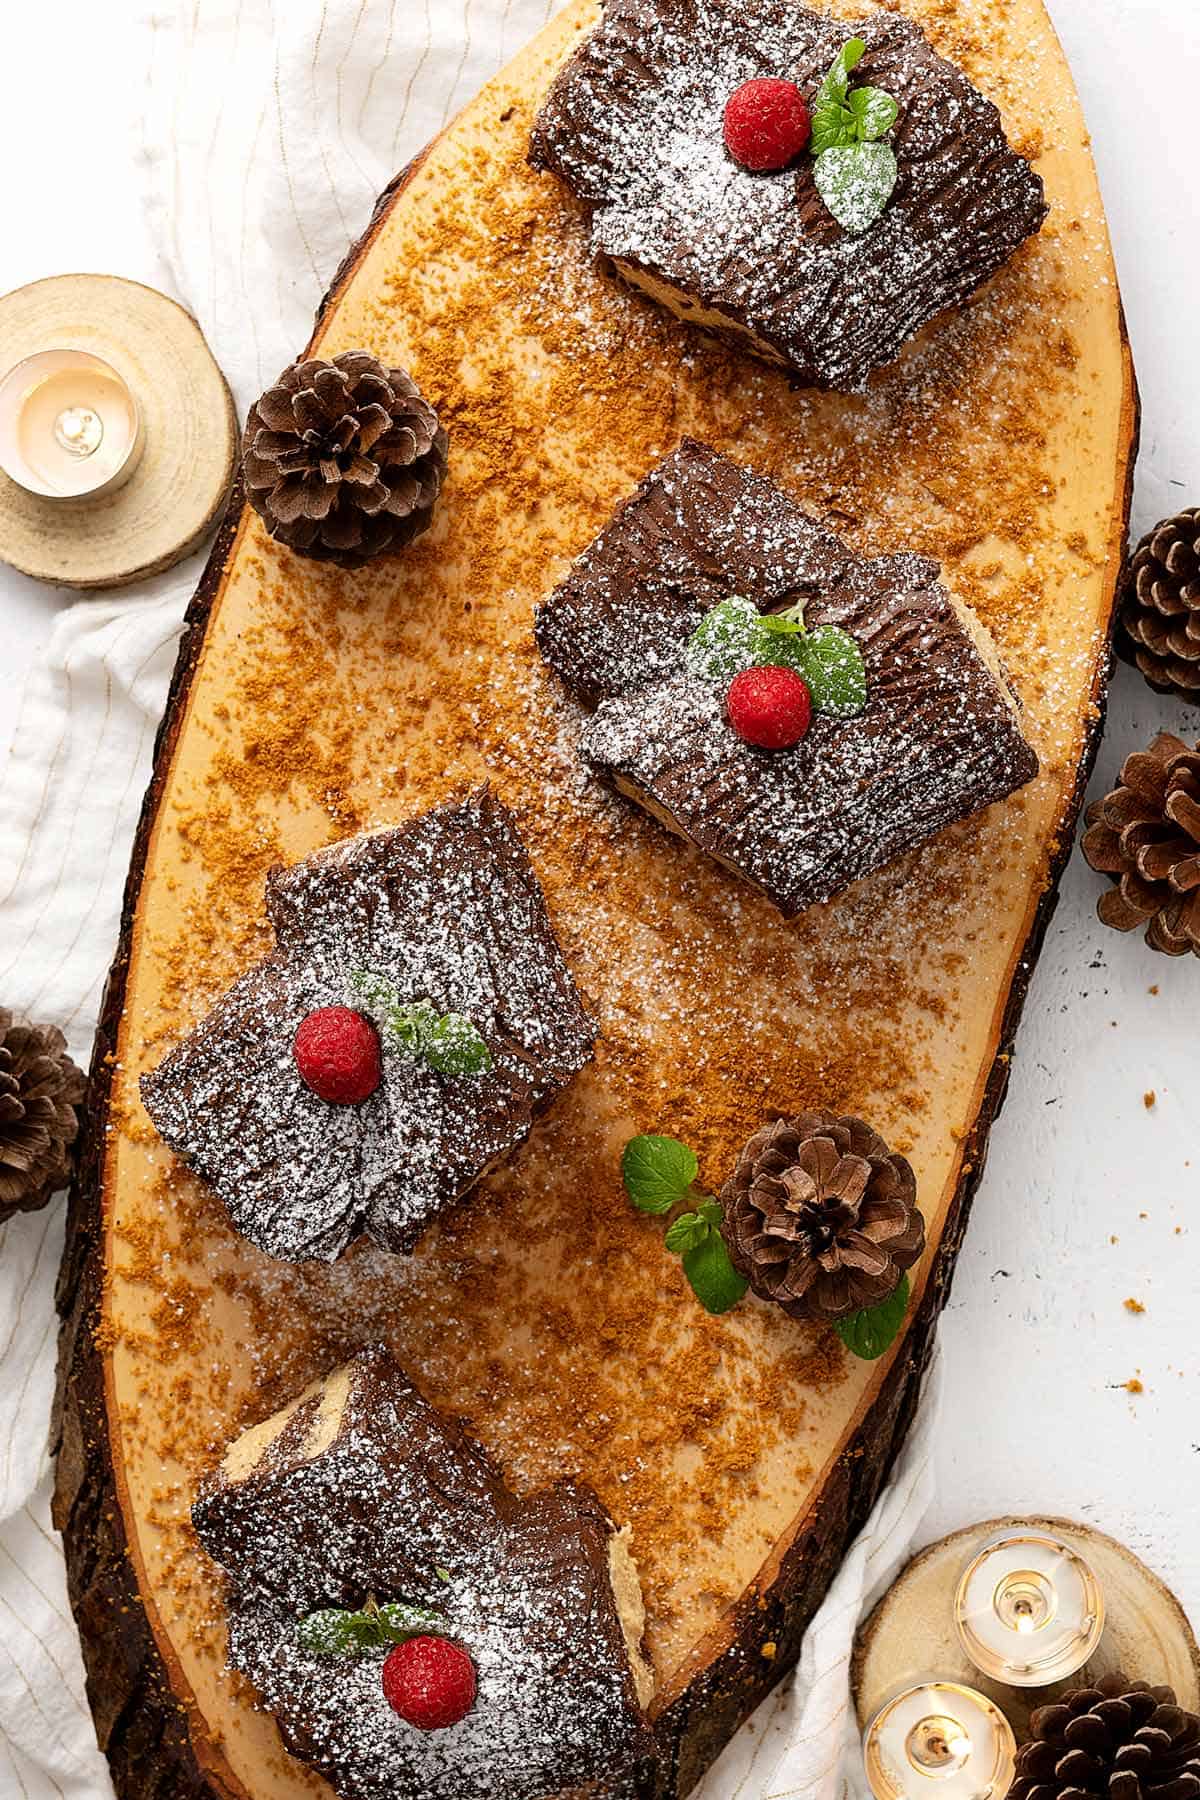 Bûche de Noël Recipe (Yule Log Cake) - Mon Petit Four®